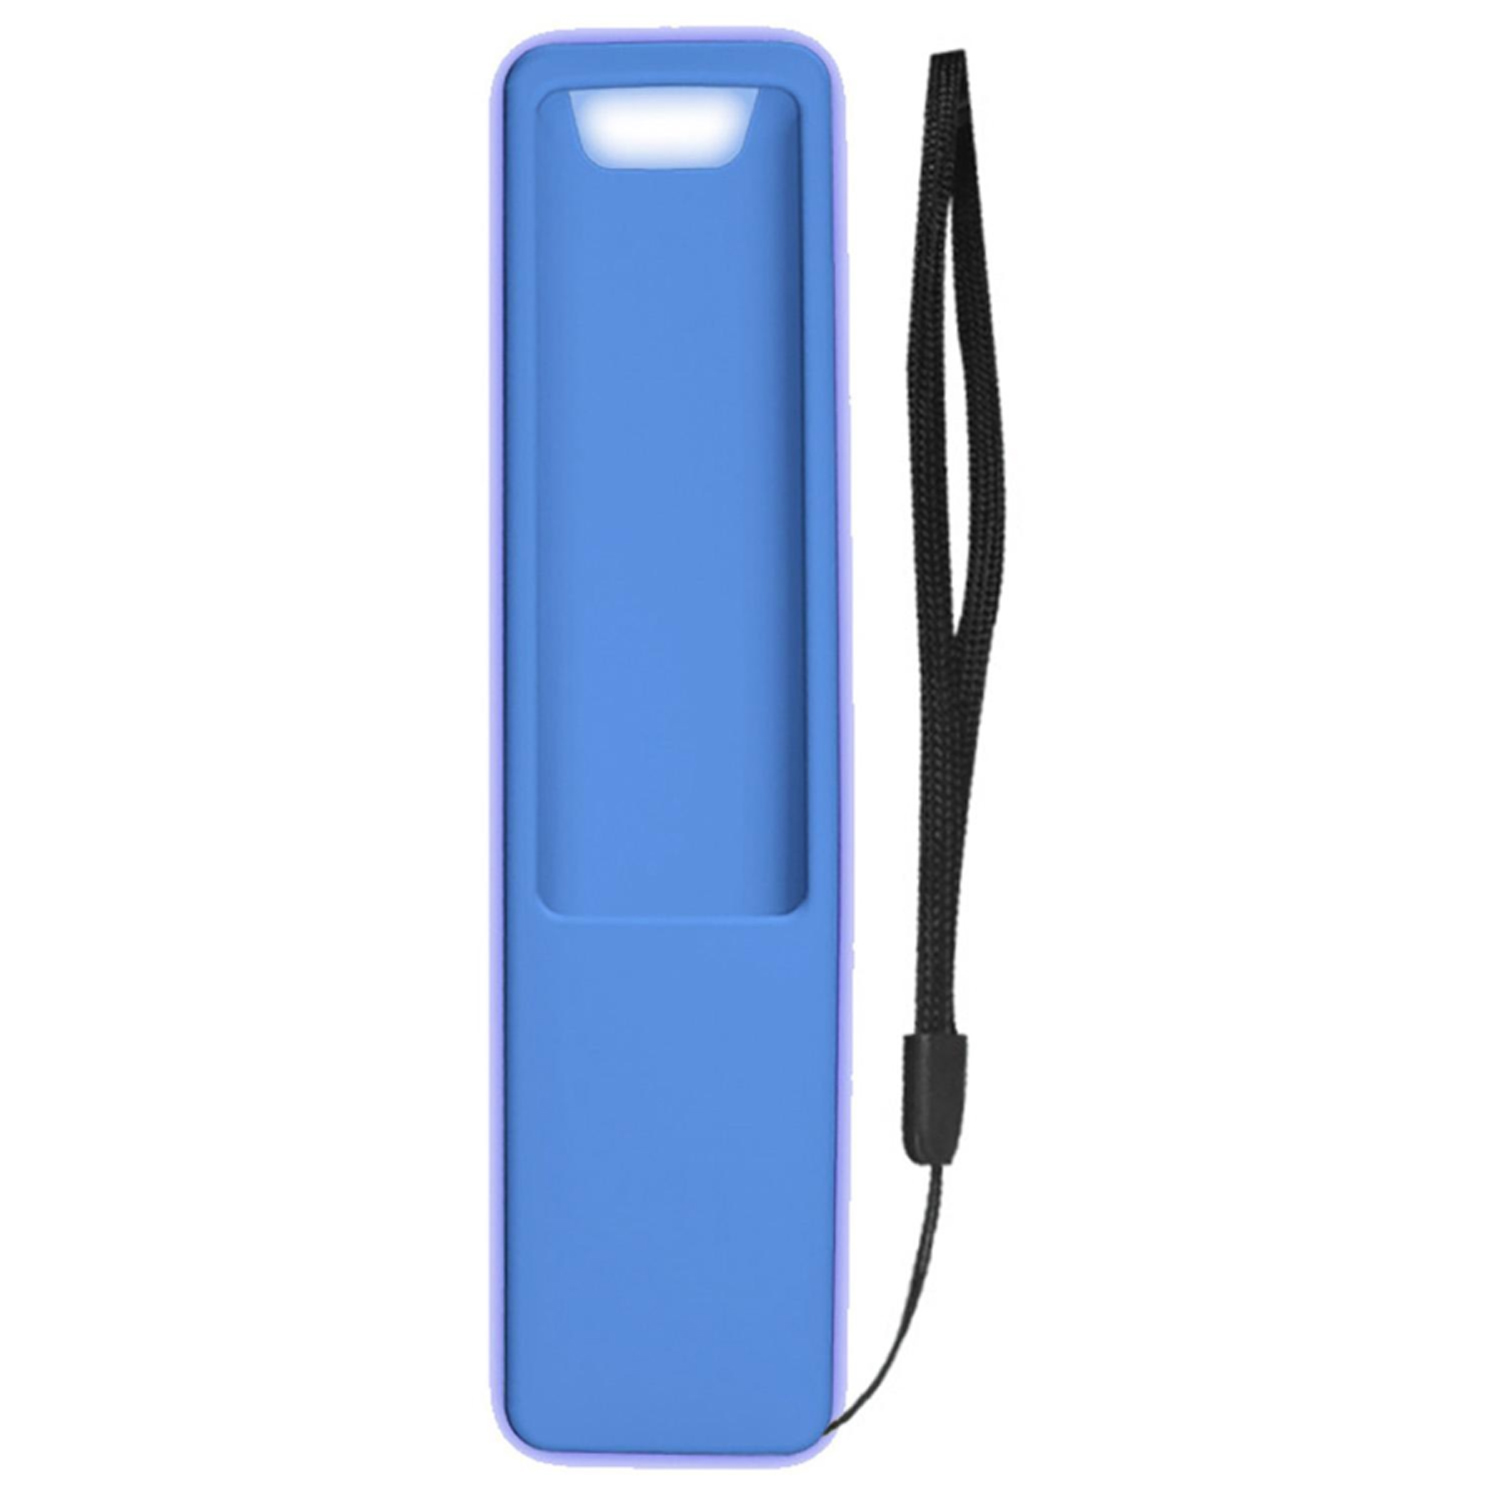 Чехол силиконовый для пульта Samsung (изогнутый корпус) голубой / люминесцентный Prime Tech PREMIUM, фото